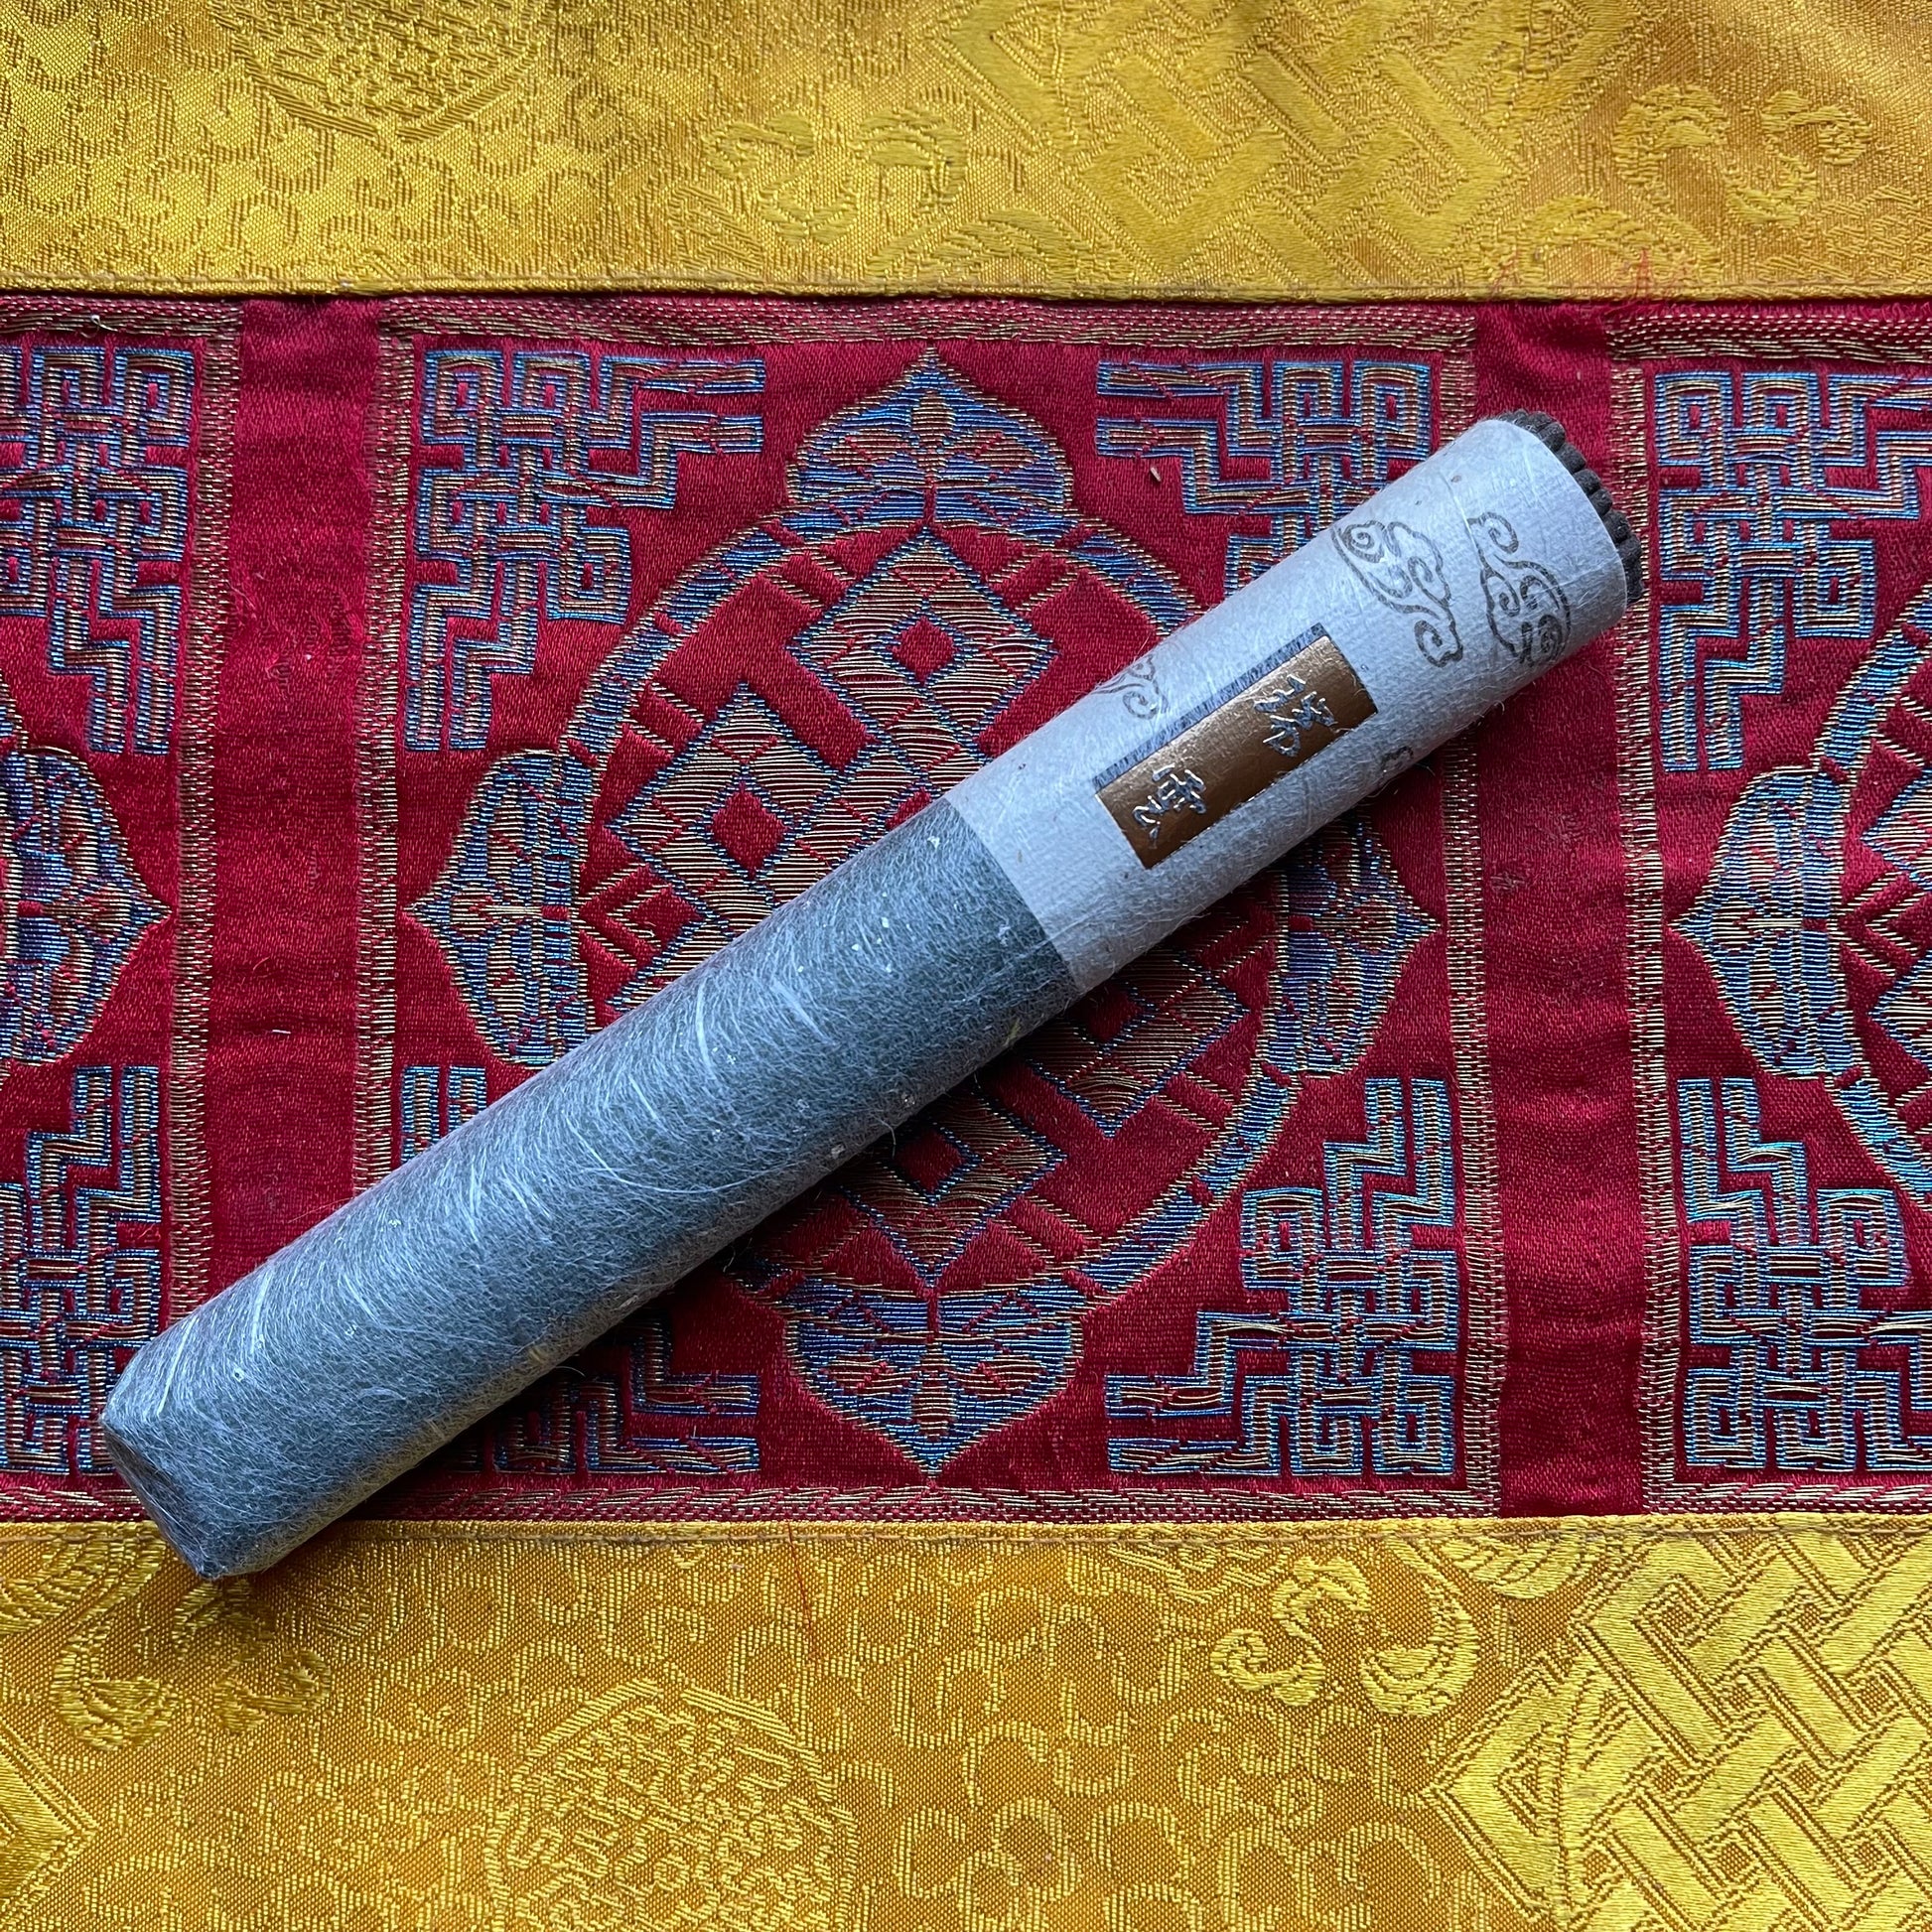 Zuiun 'Good Fortune Cloud' Incense Roll (50 Sticks)